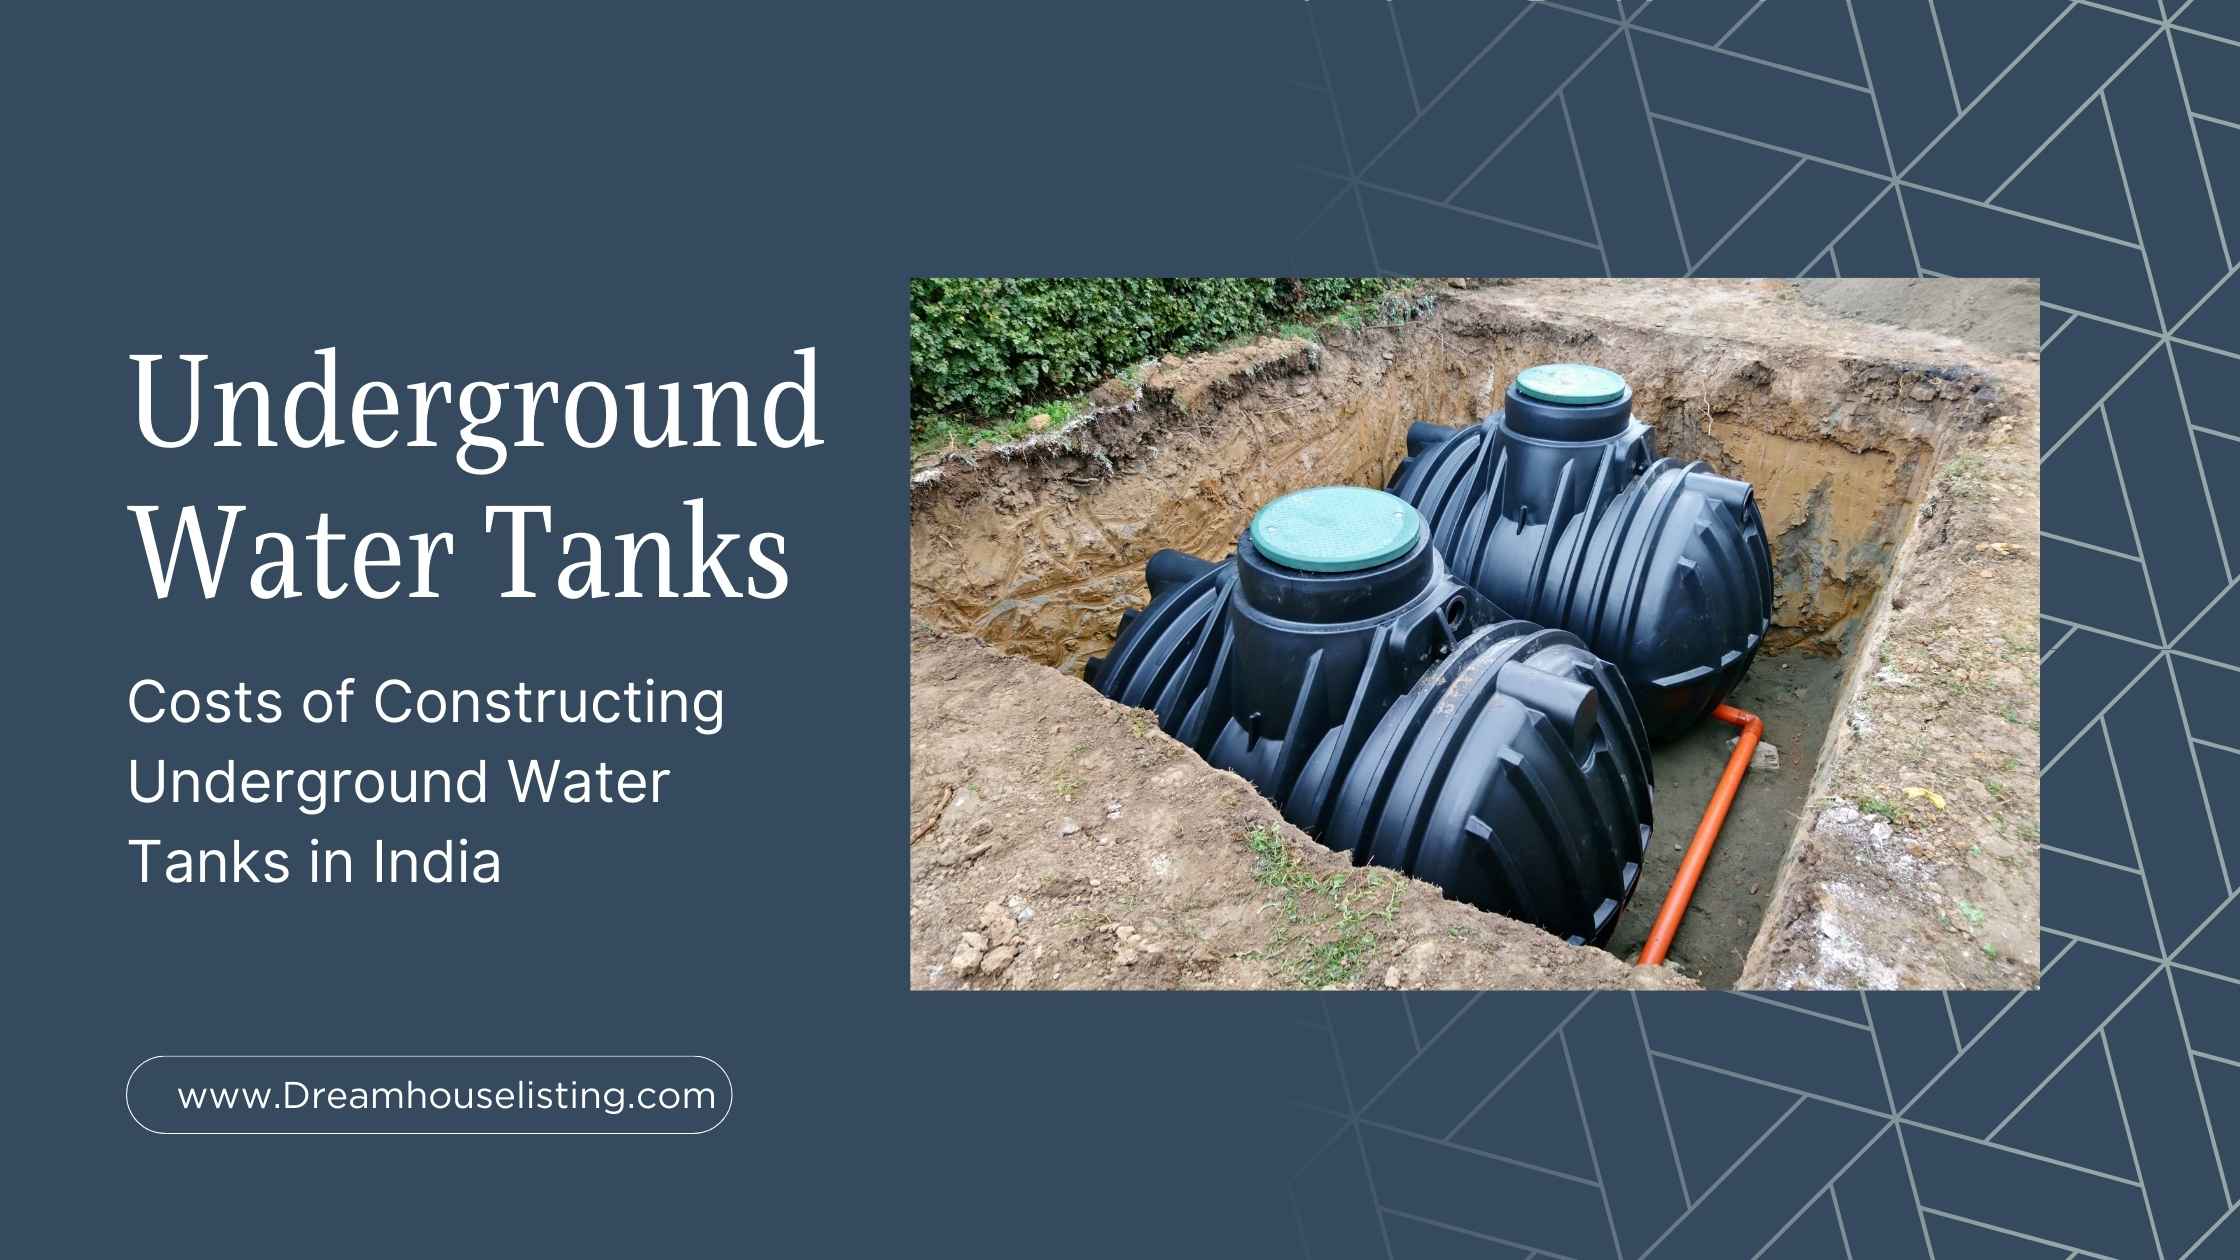 Underground water tanks